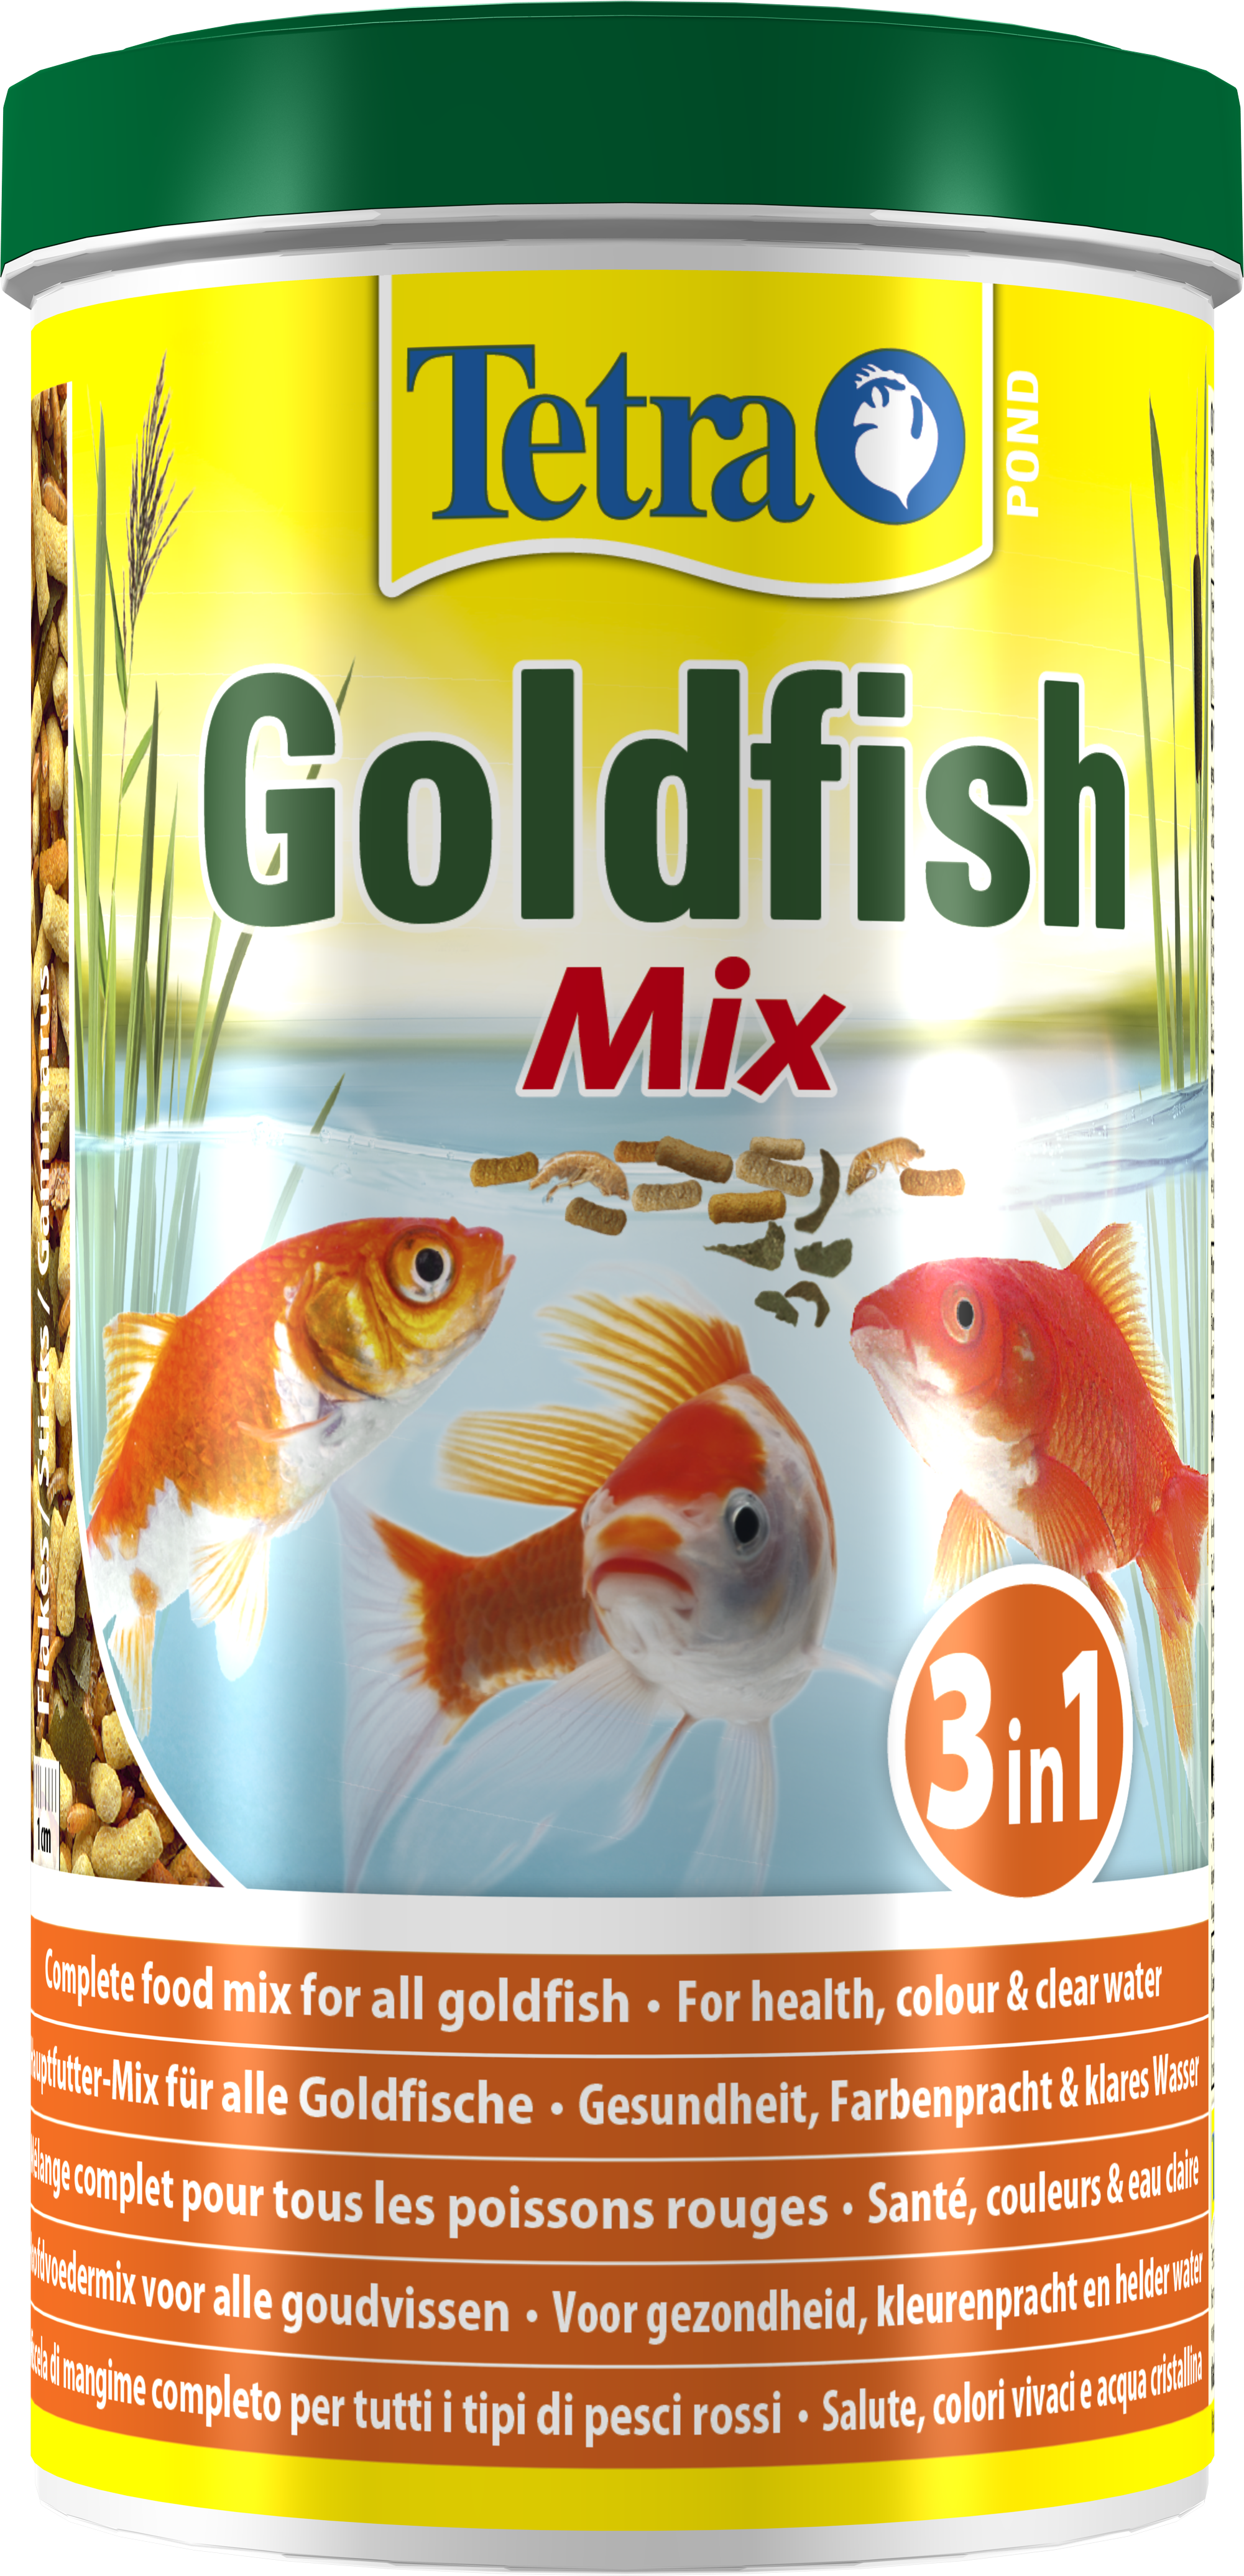 Tetra Pond GoldFish Mix